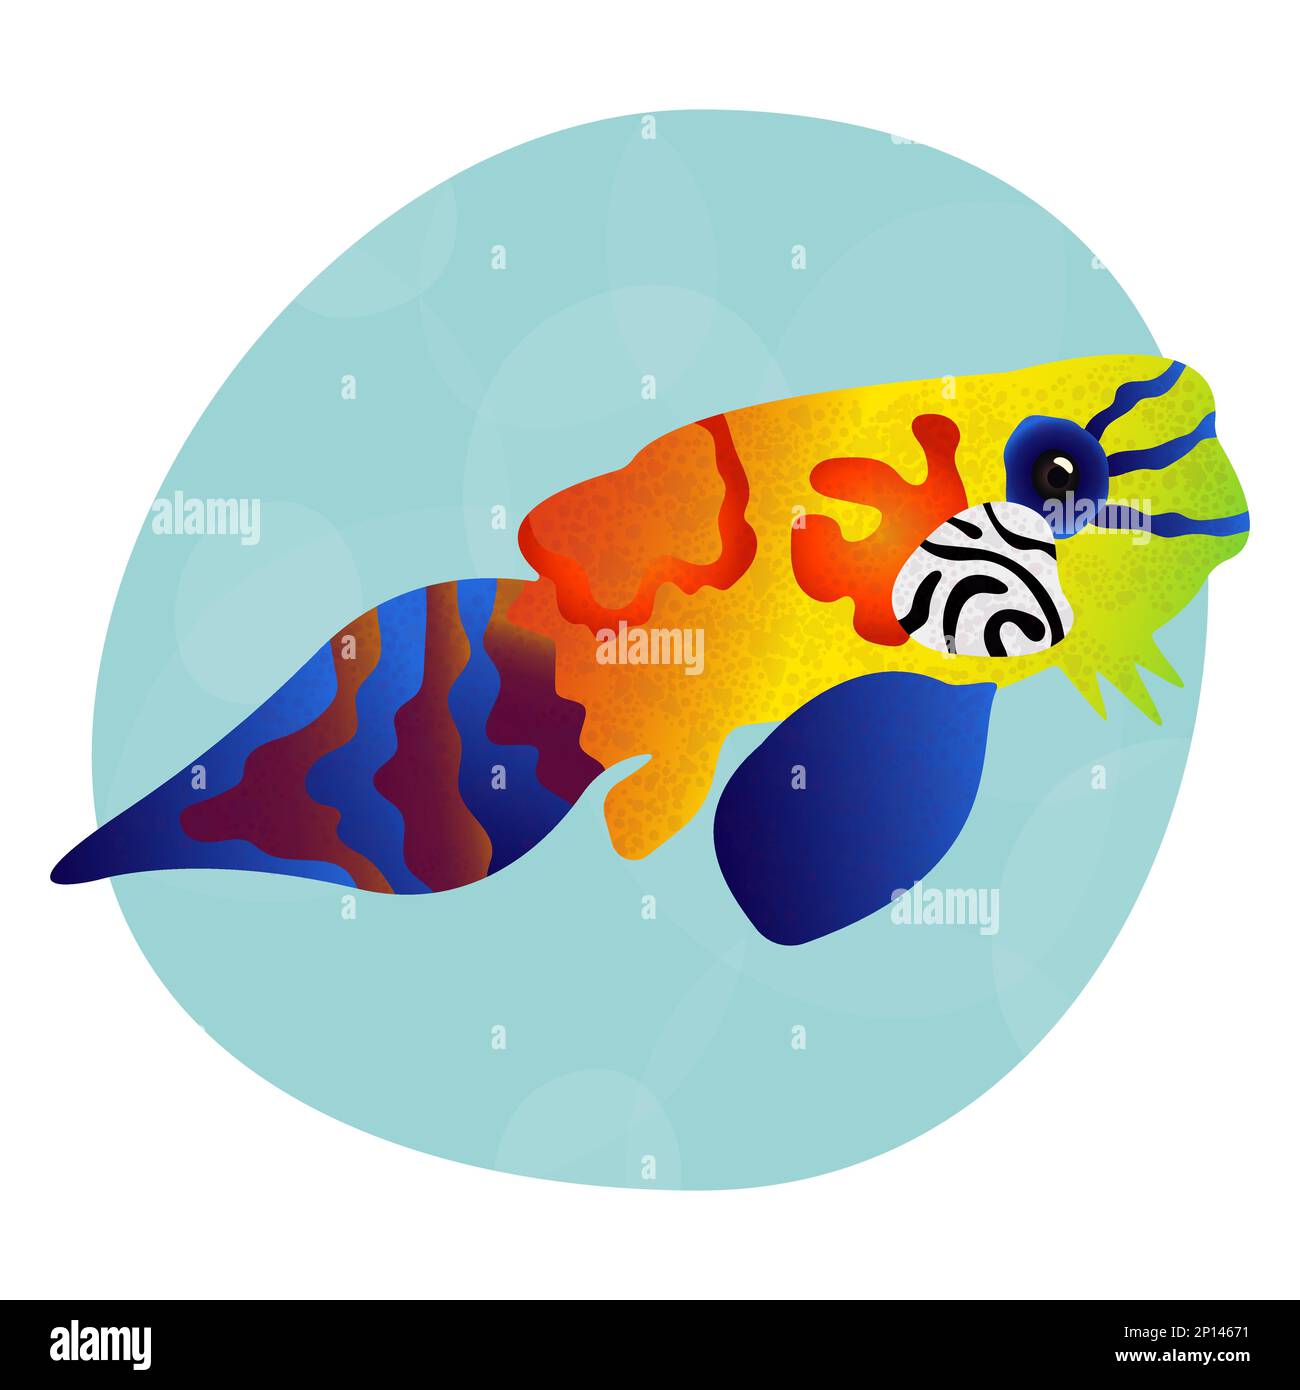 Einzigartige und ungewöhnliche helle tropische Mandarinen. Meeresfische mit farbenfroher Dekoration. Cooles Muster für Kleidung, Tassen, Teller, Waren. Meereswelt. Logo für Stock Vektor